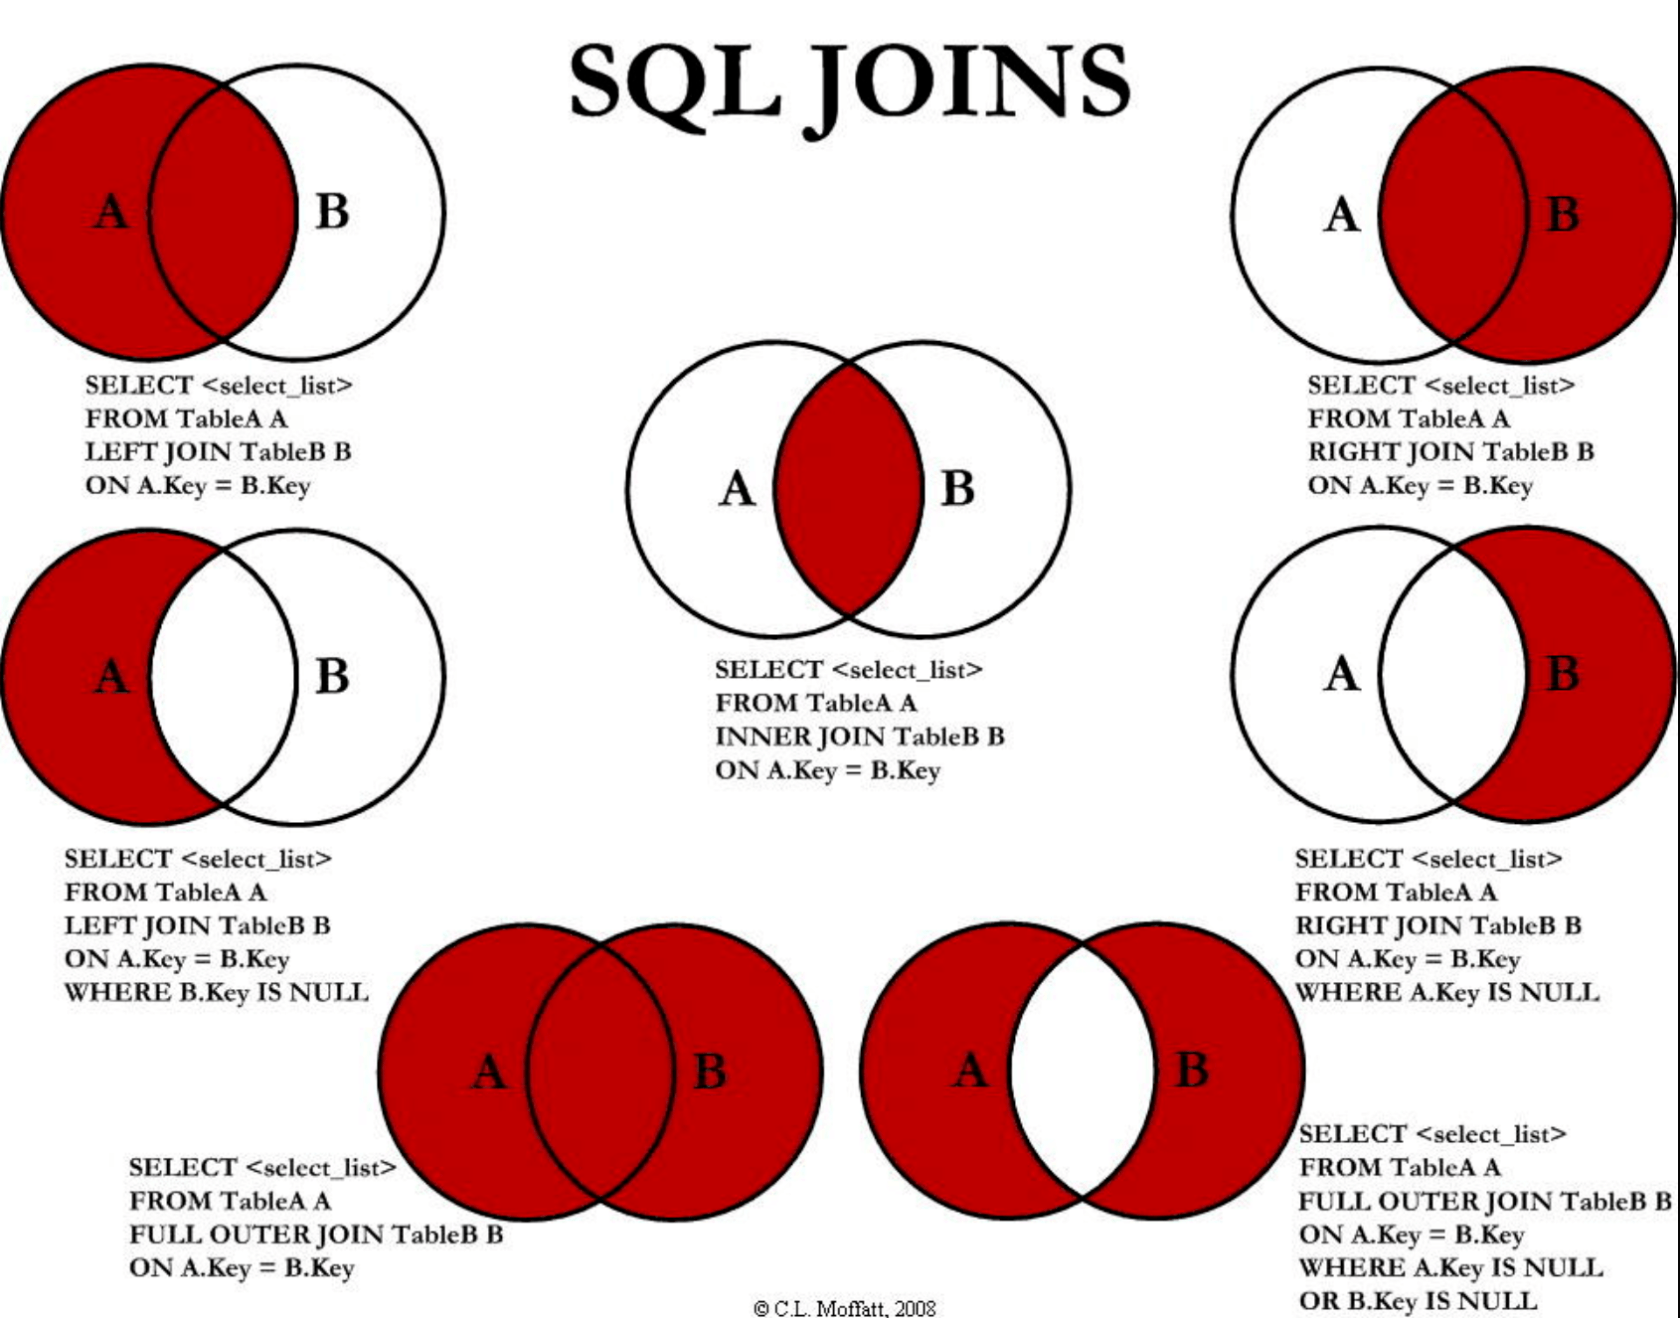 关于SQL JOIN相关语句的理解